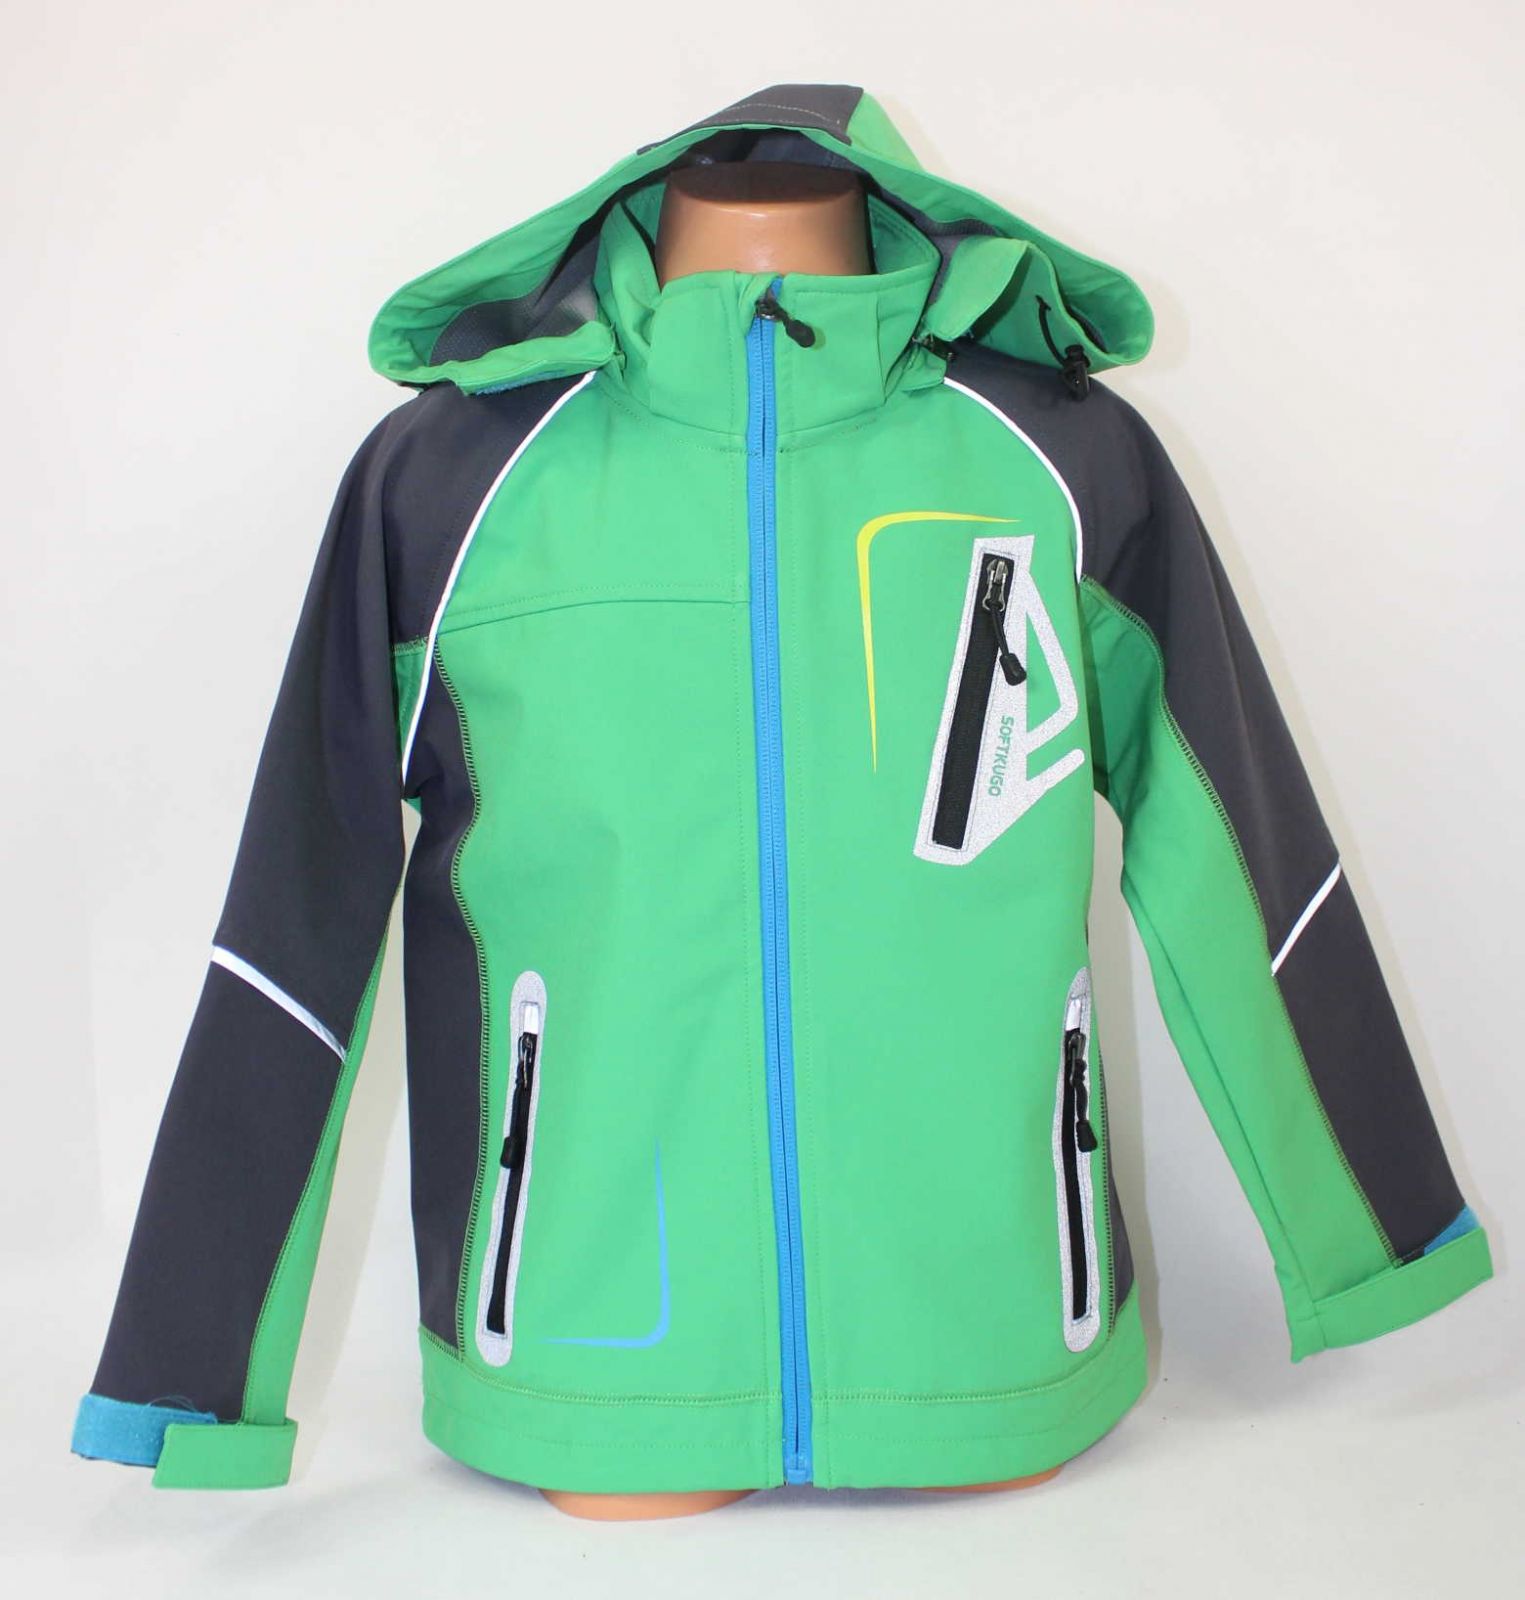 Dětská jarní softshellová bunda KUGO, chlapecká softshellová bunda, jarní bunda, zelená jarní softshellová bunda